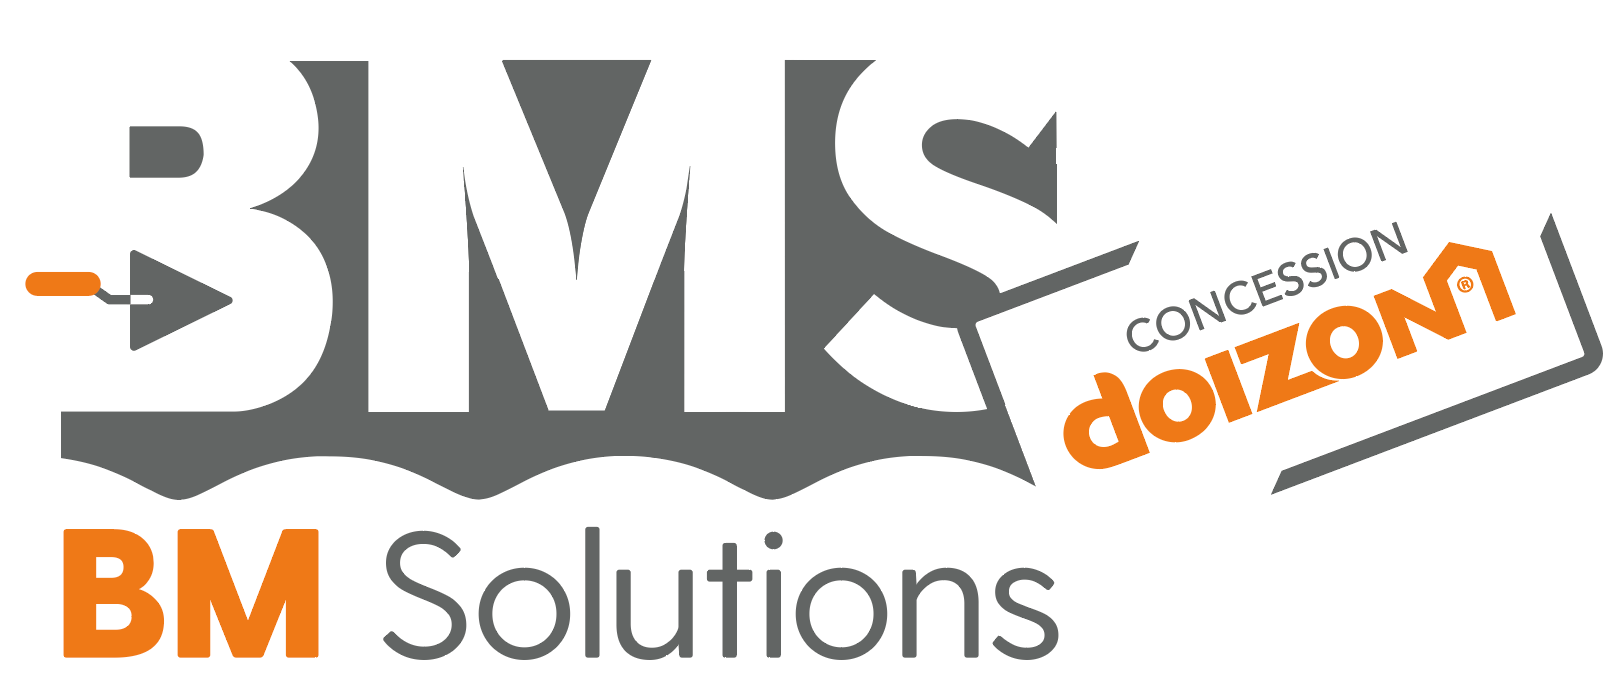 BM Solutions maçonnerie logo